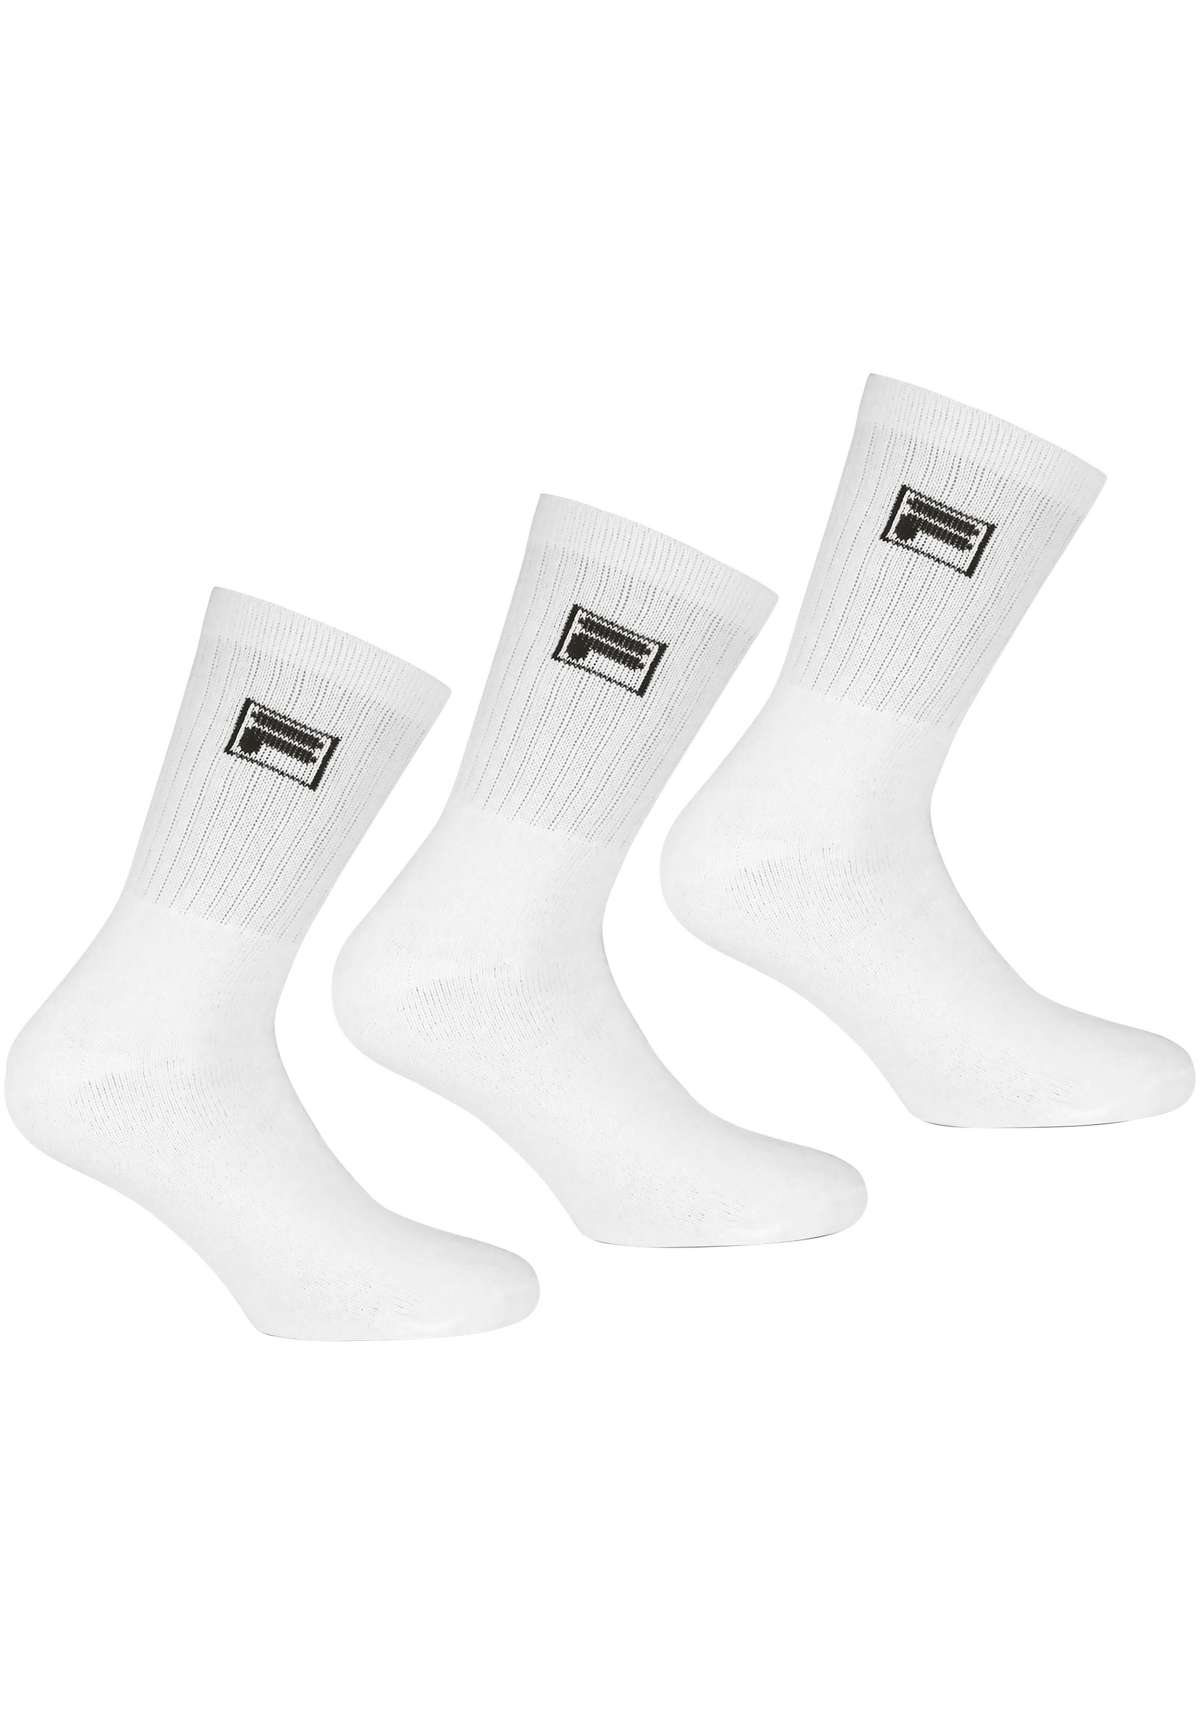 Спортивные носки (3 пары в упаковке), классические теннисные носки, носки для отдыха.